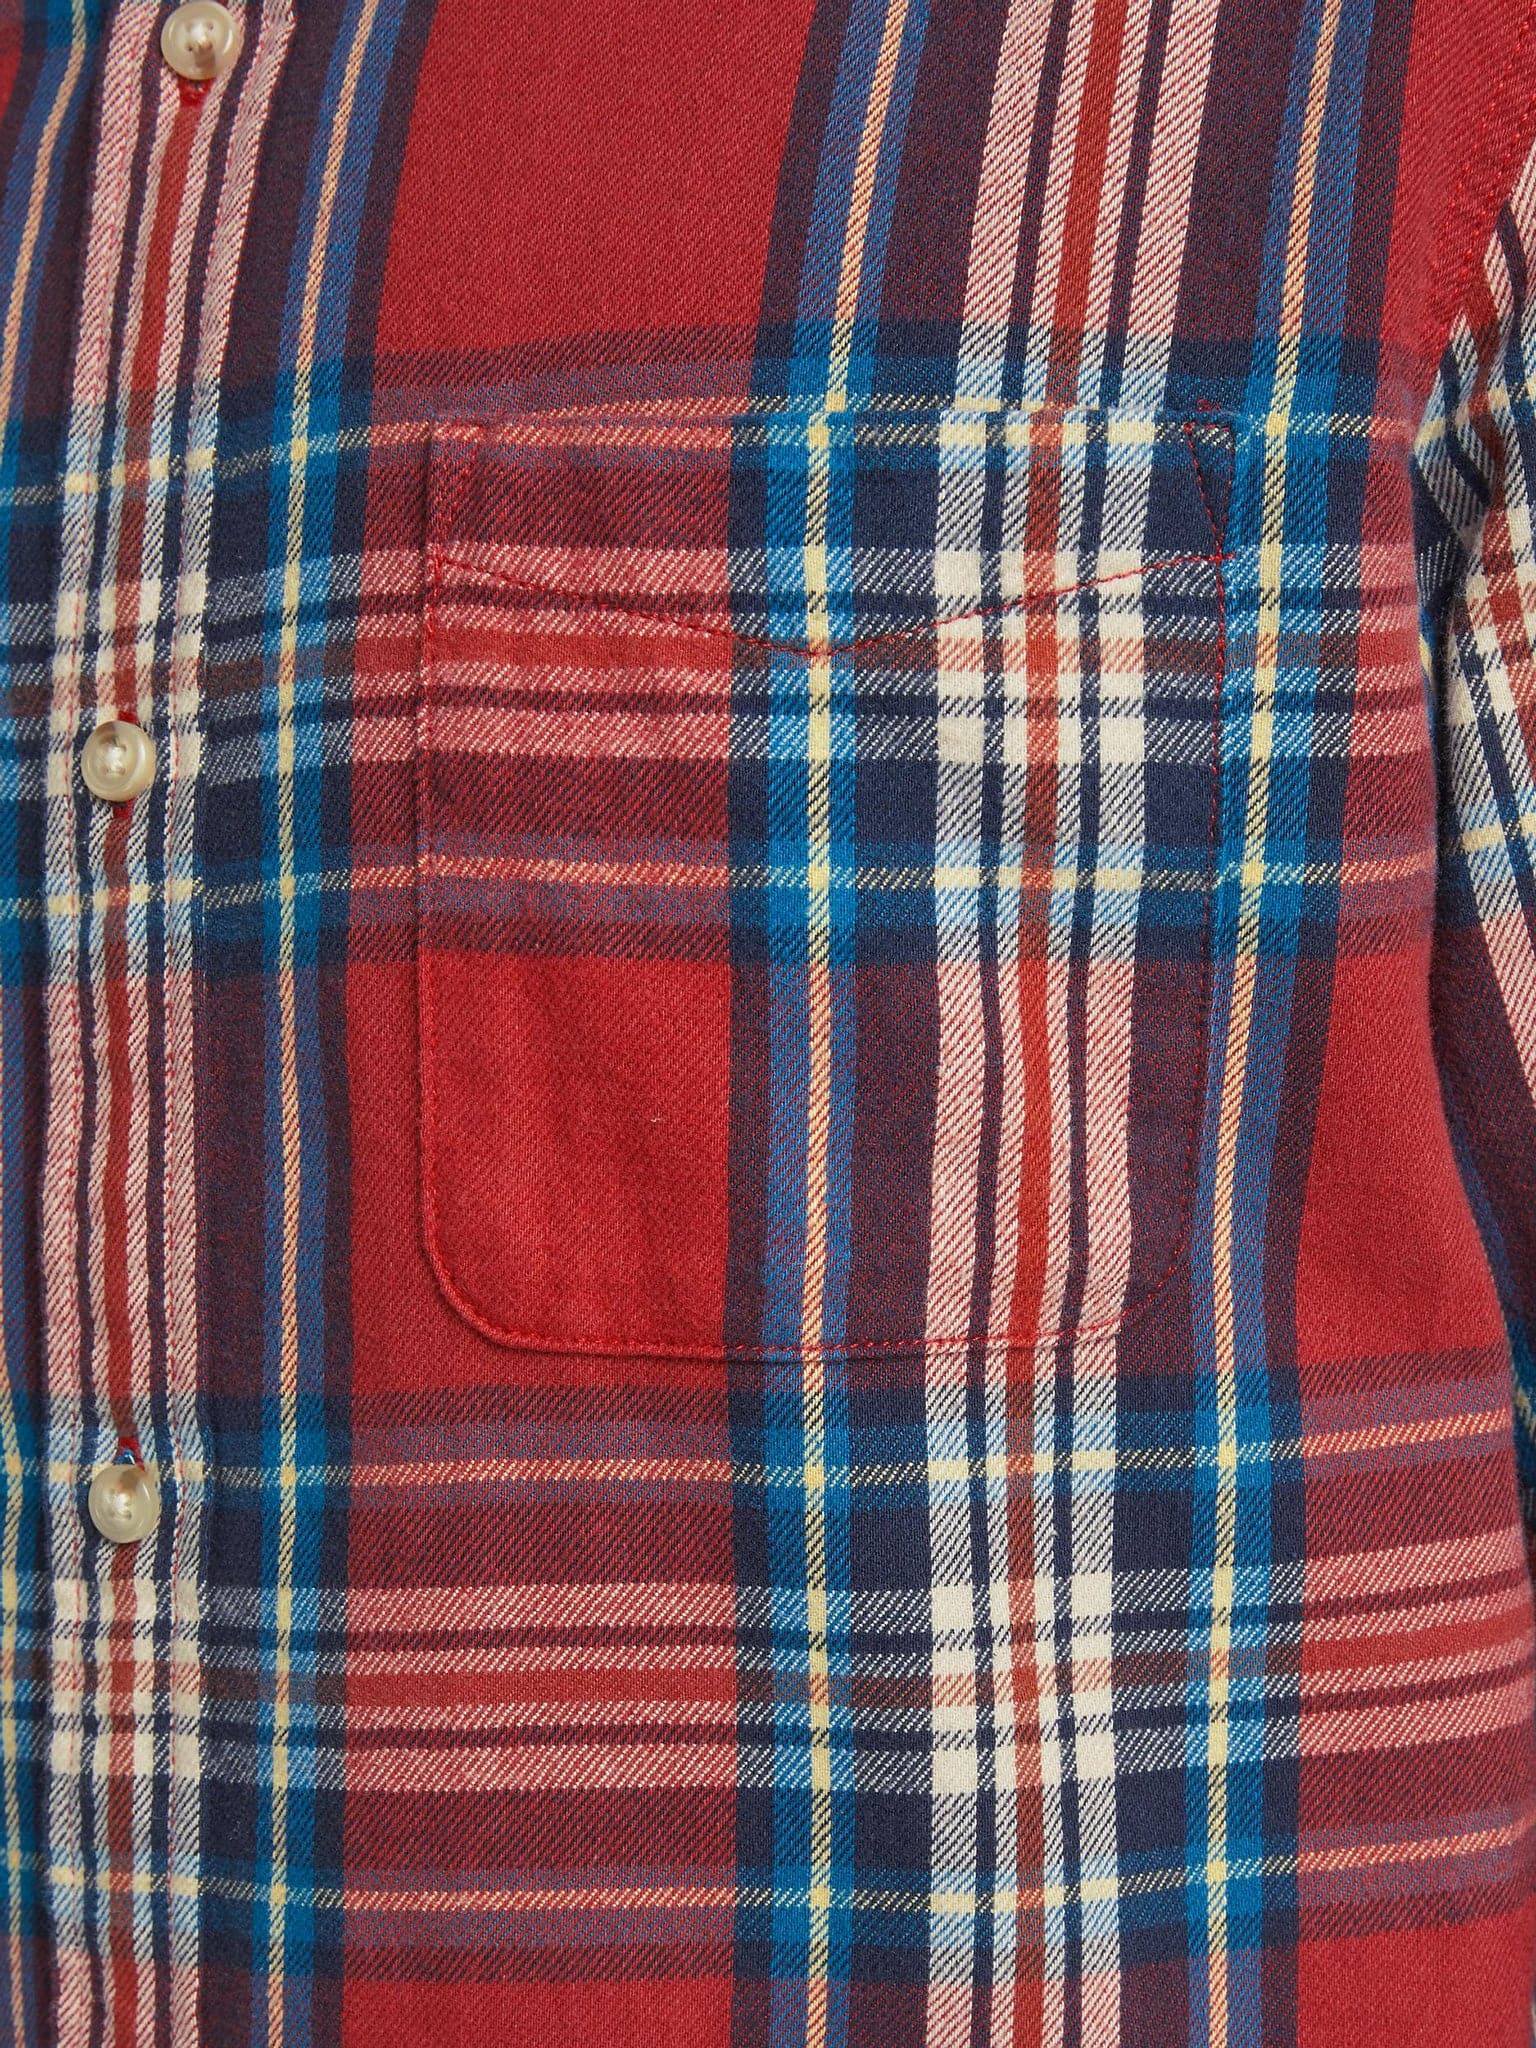 Ανδρικό πουκάμισο καρό φανέλα JPRBLUMIKE CHECK SHIRT LS ONE POCKET 12180388 | 12180388